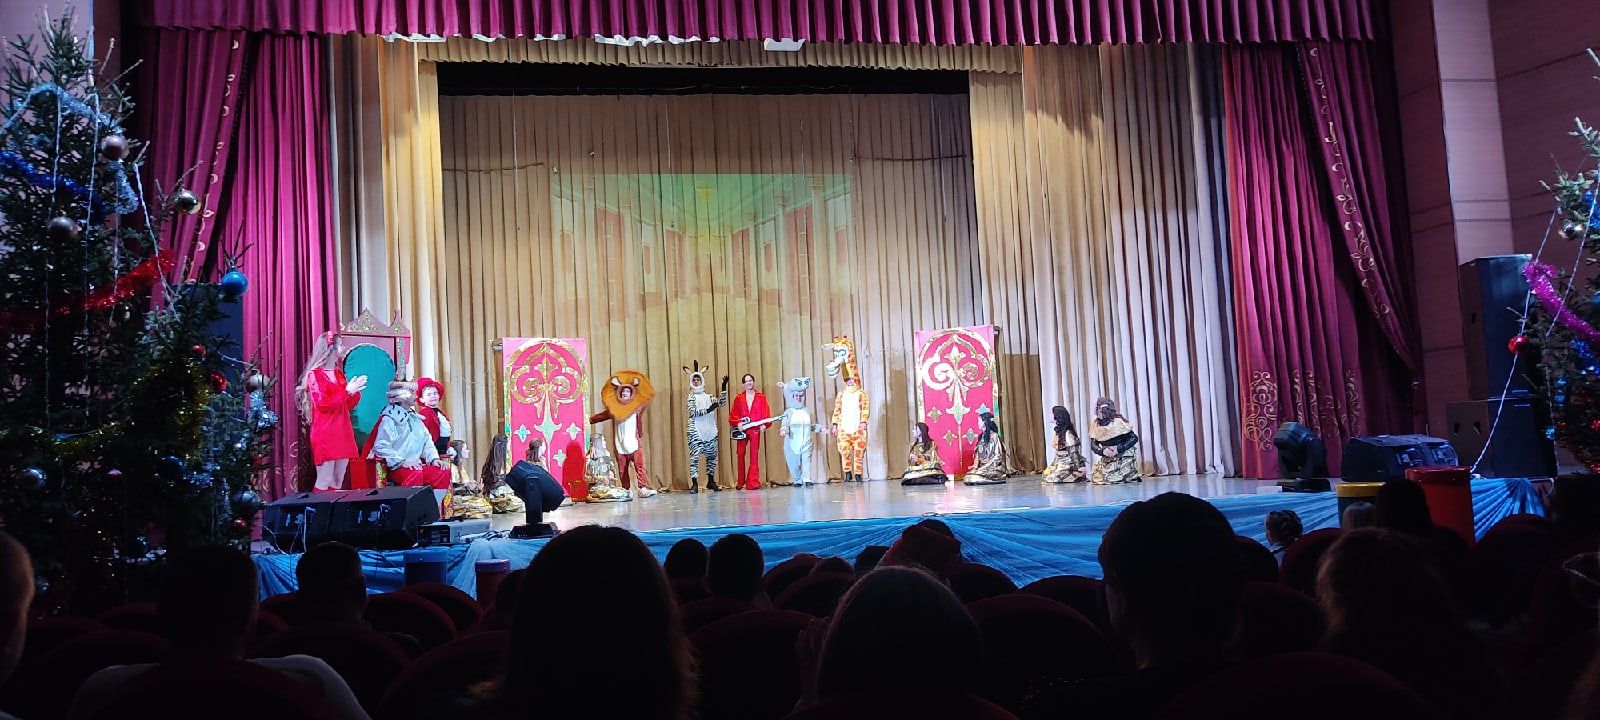 Мадагаскар по бременски: веселый спектакль для детей и взрослых